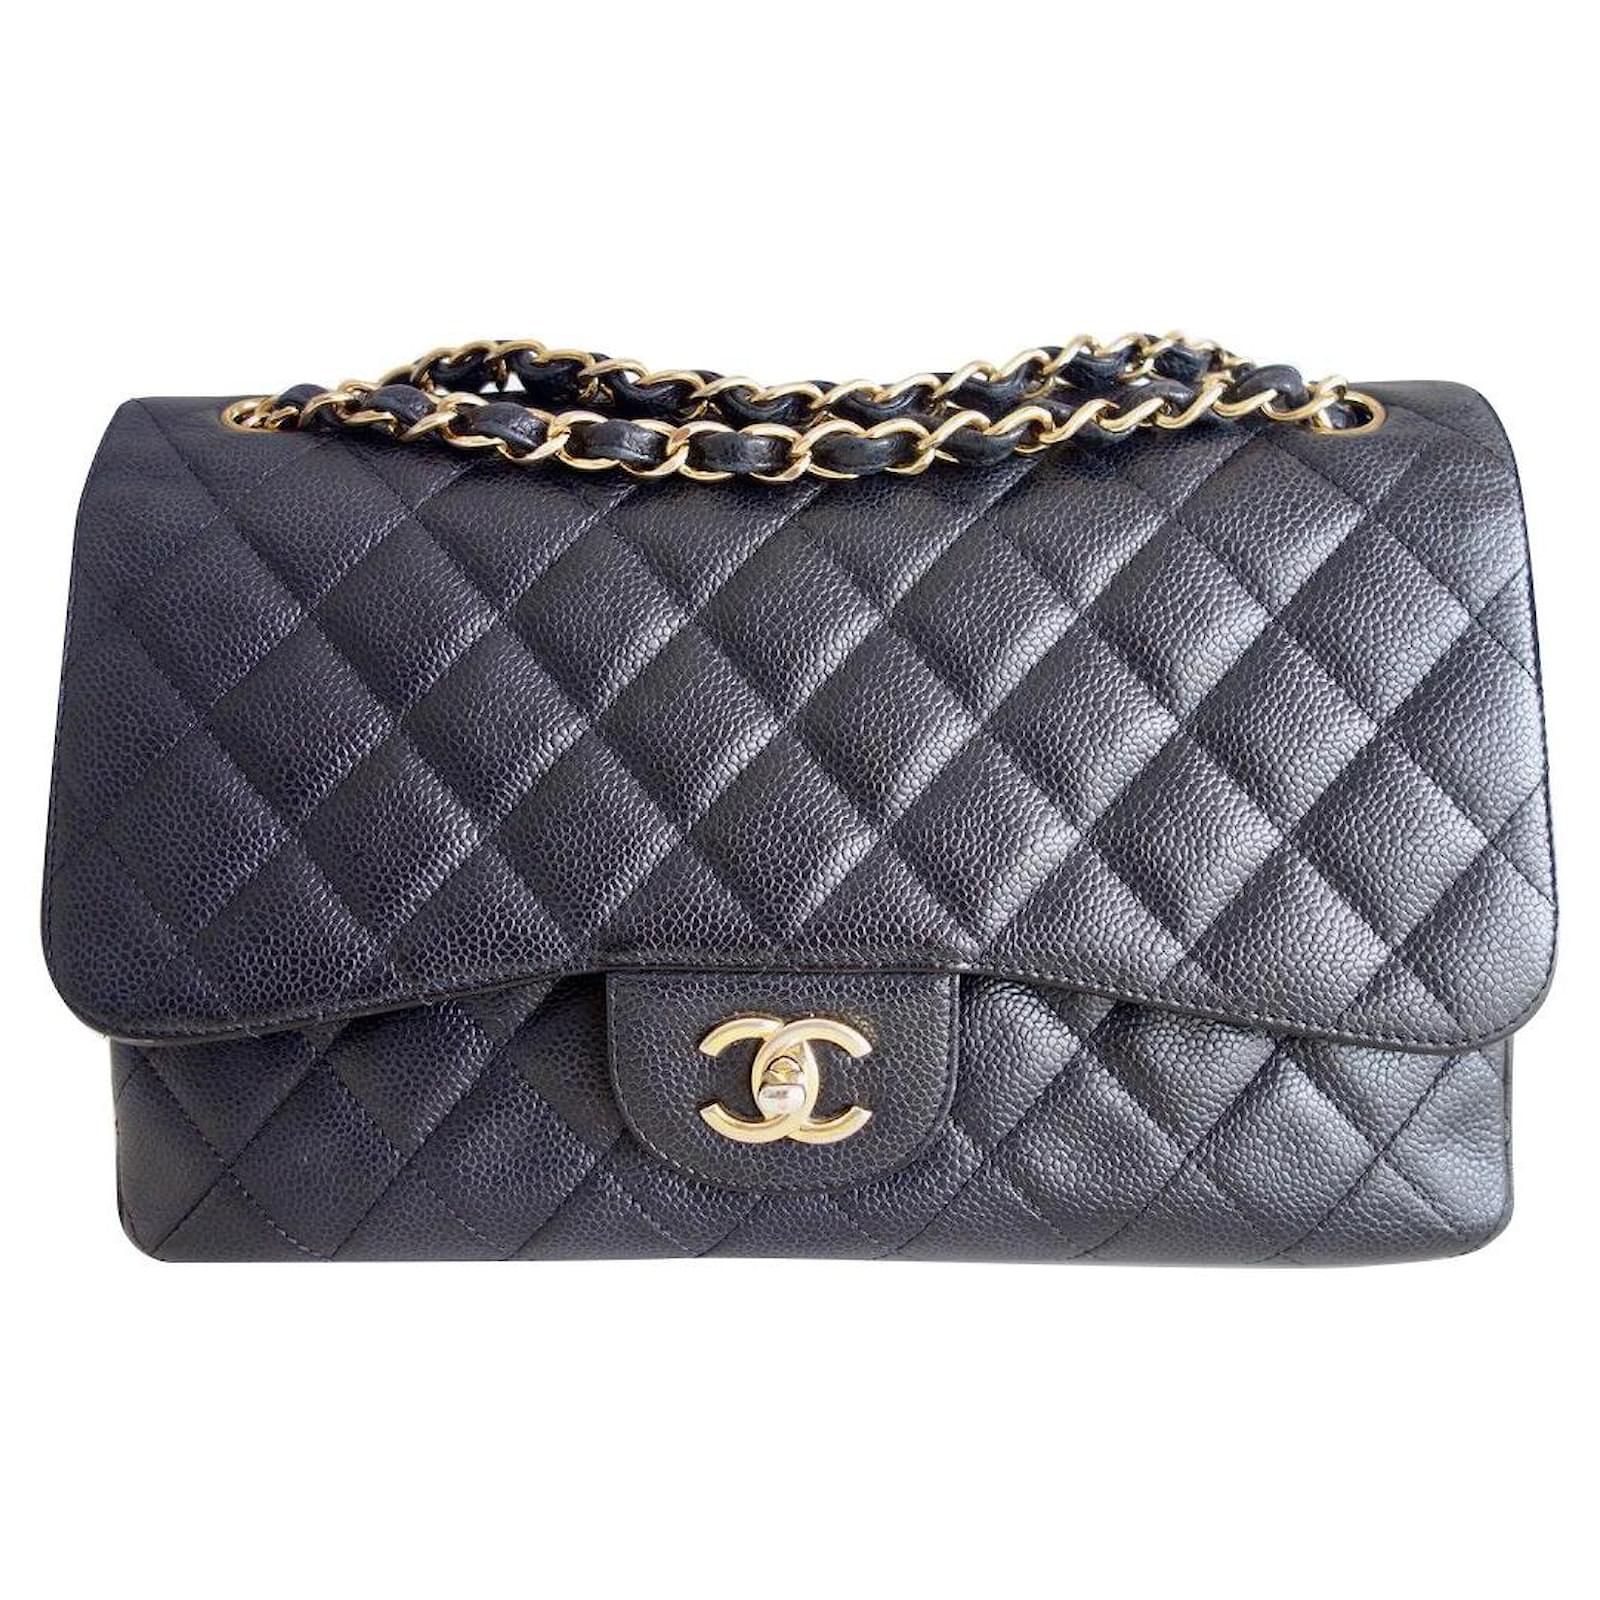 Handbags Chanel GM Classic Chanel Bag